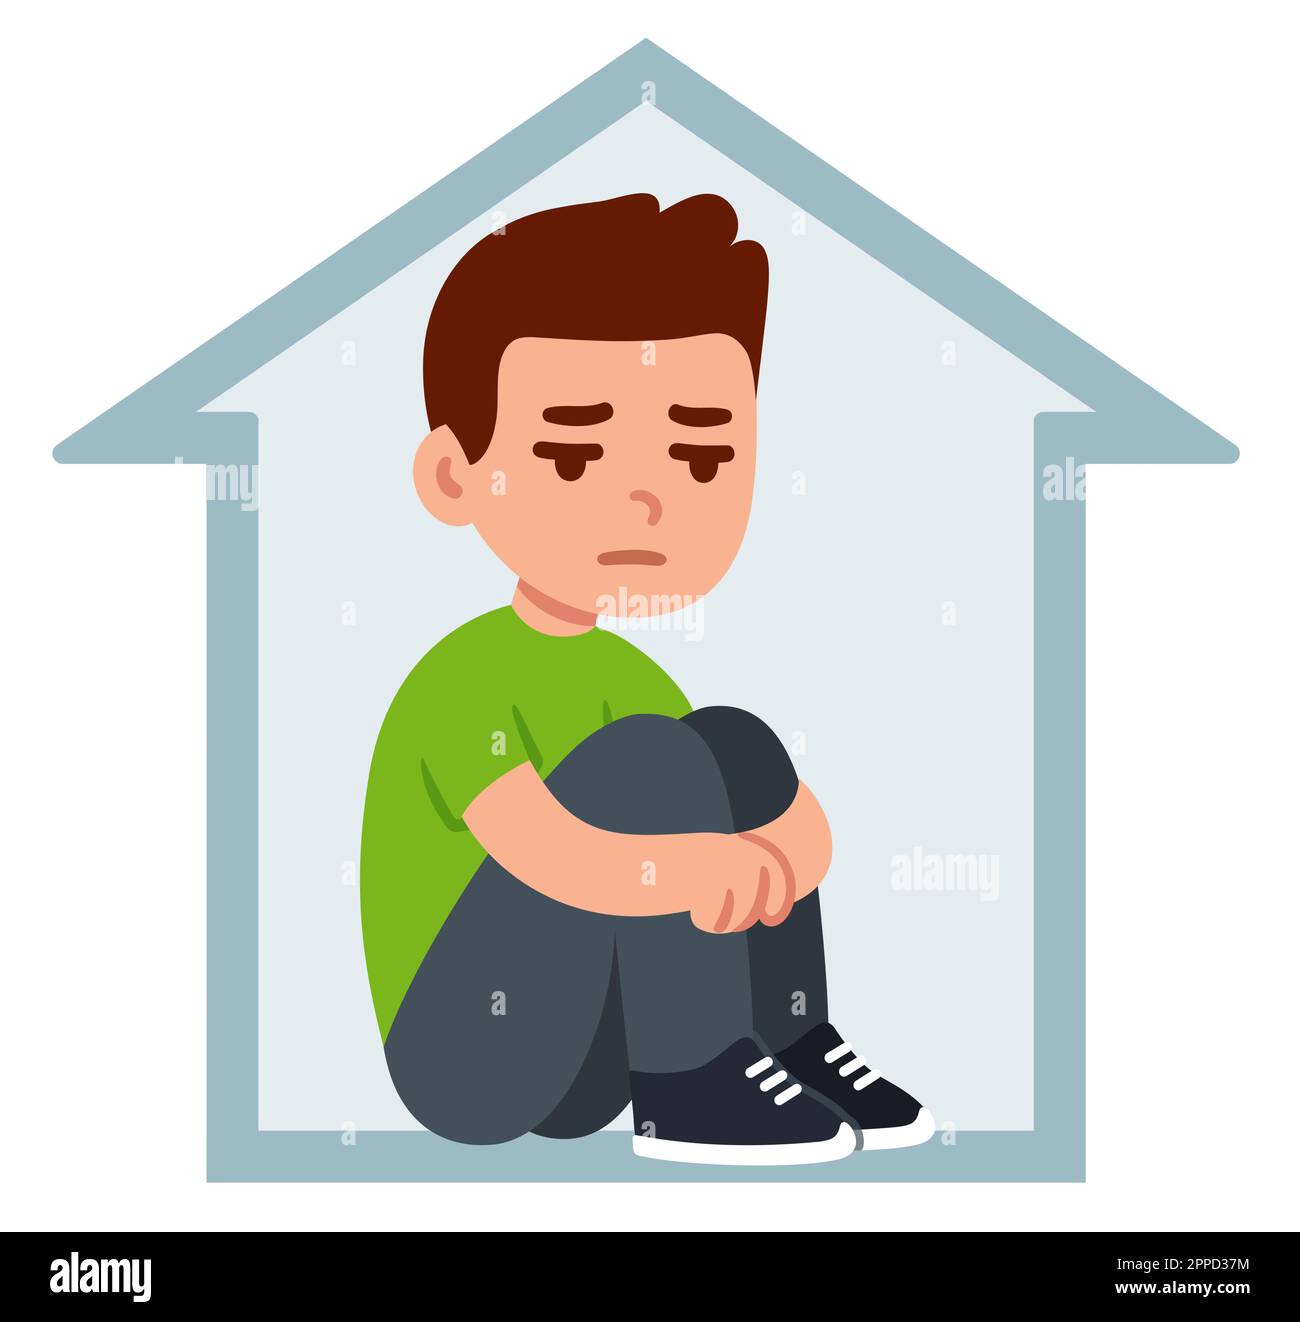 Ein Teenager, der allein zuhause sitzt und Knie umarmt. Depression, Einsamkeit, soziale Angst. Einfache flache Zeichentrickzeichnung. Psychische Gesundheit Vektor-Clip Art i Stock Vektor